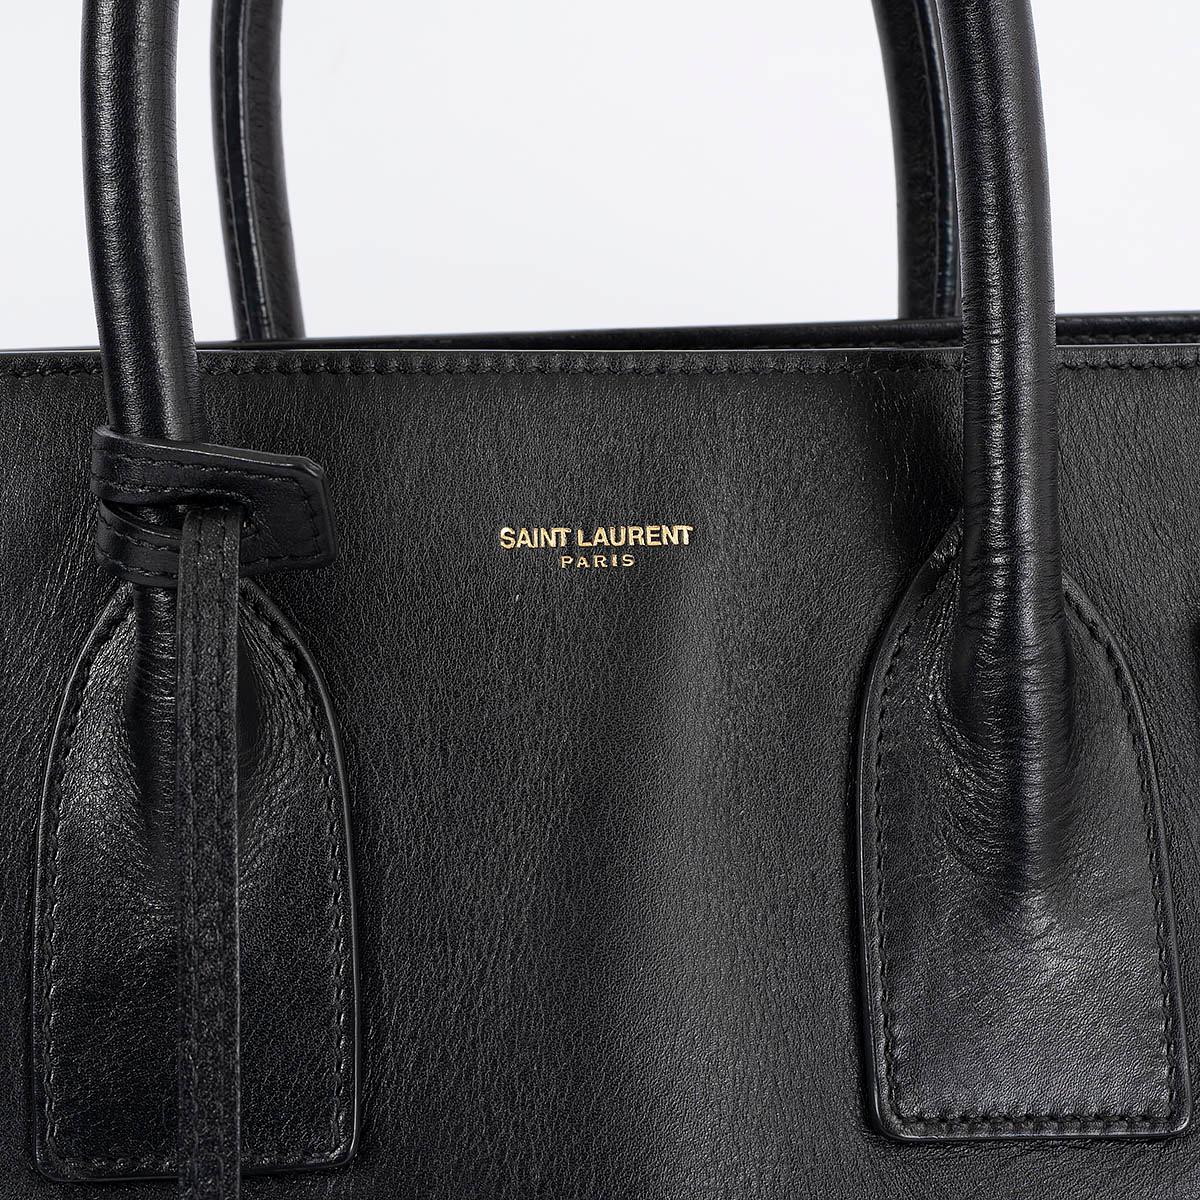 SAINT LAURENT black leather SMALL SAC DE JOUR Tote Bag 1